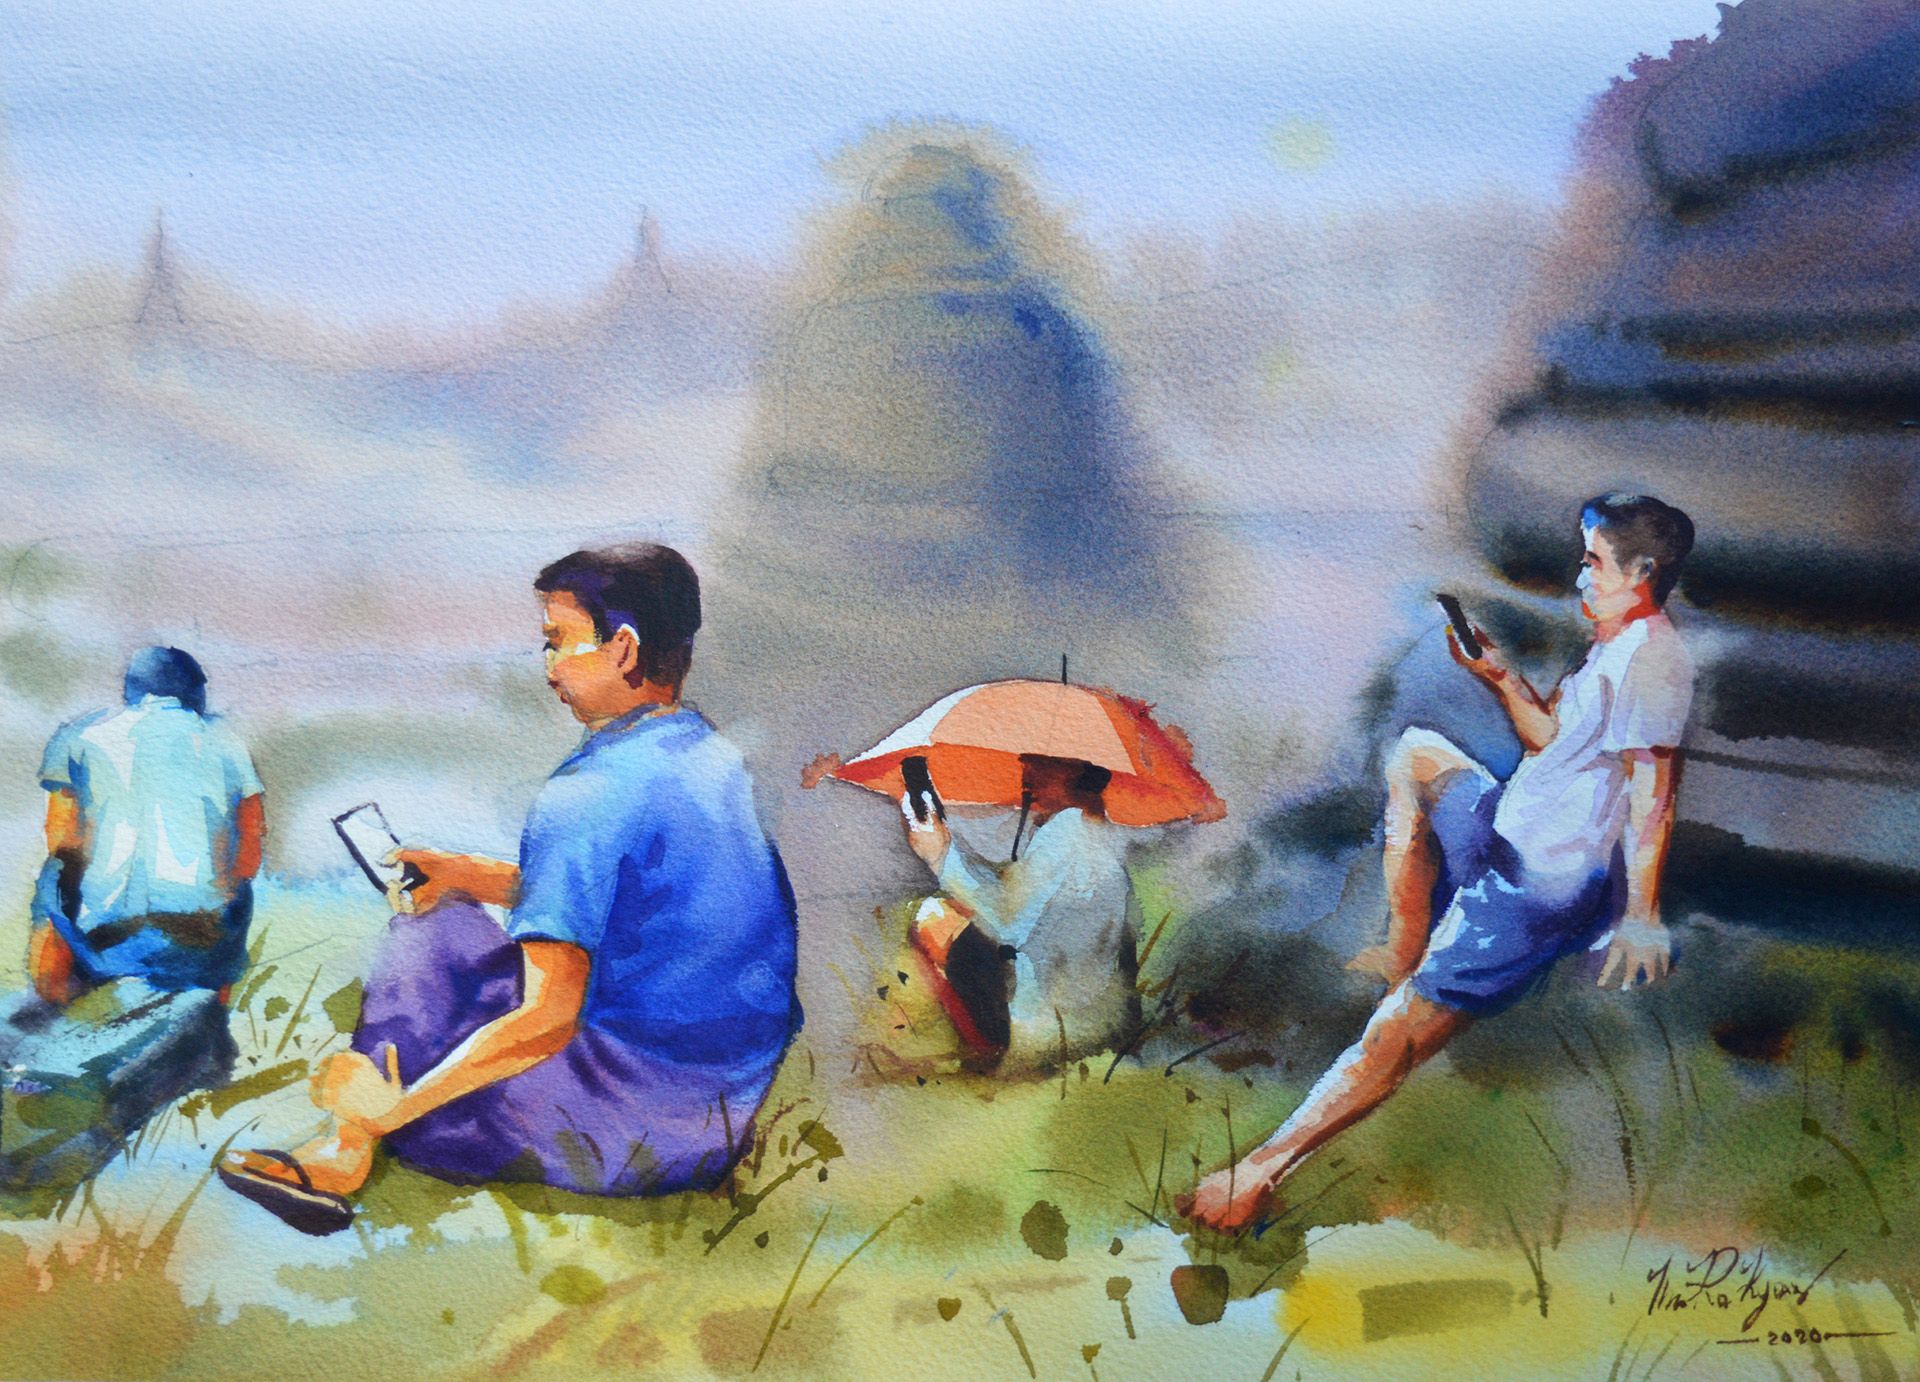 Illustration by Thu Ra Kyaw / TNH.